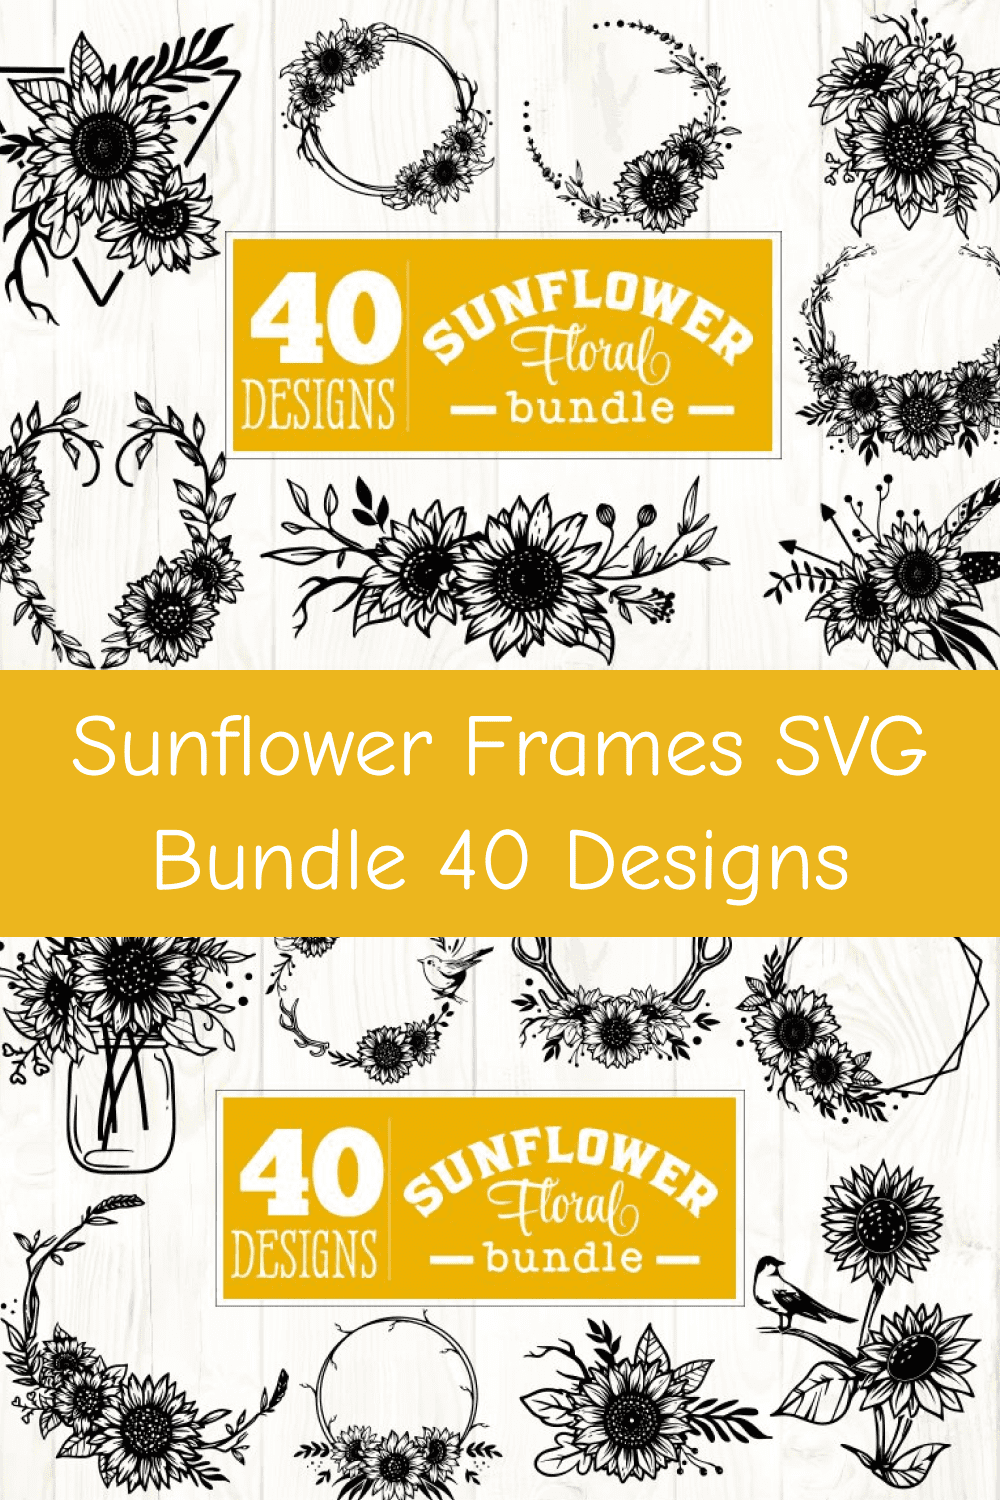 03 sunflower frames svg bundle 40 designs pinterest